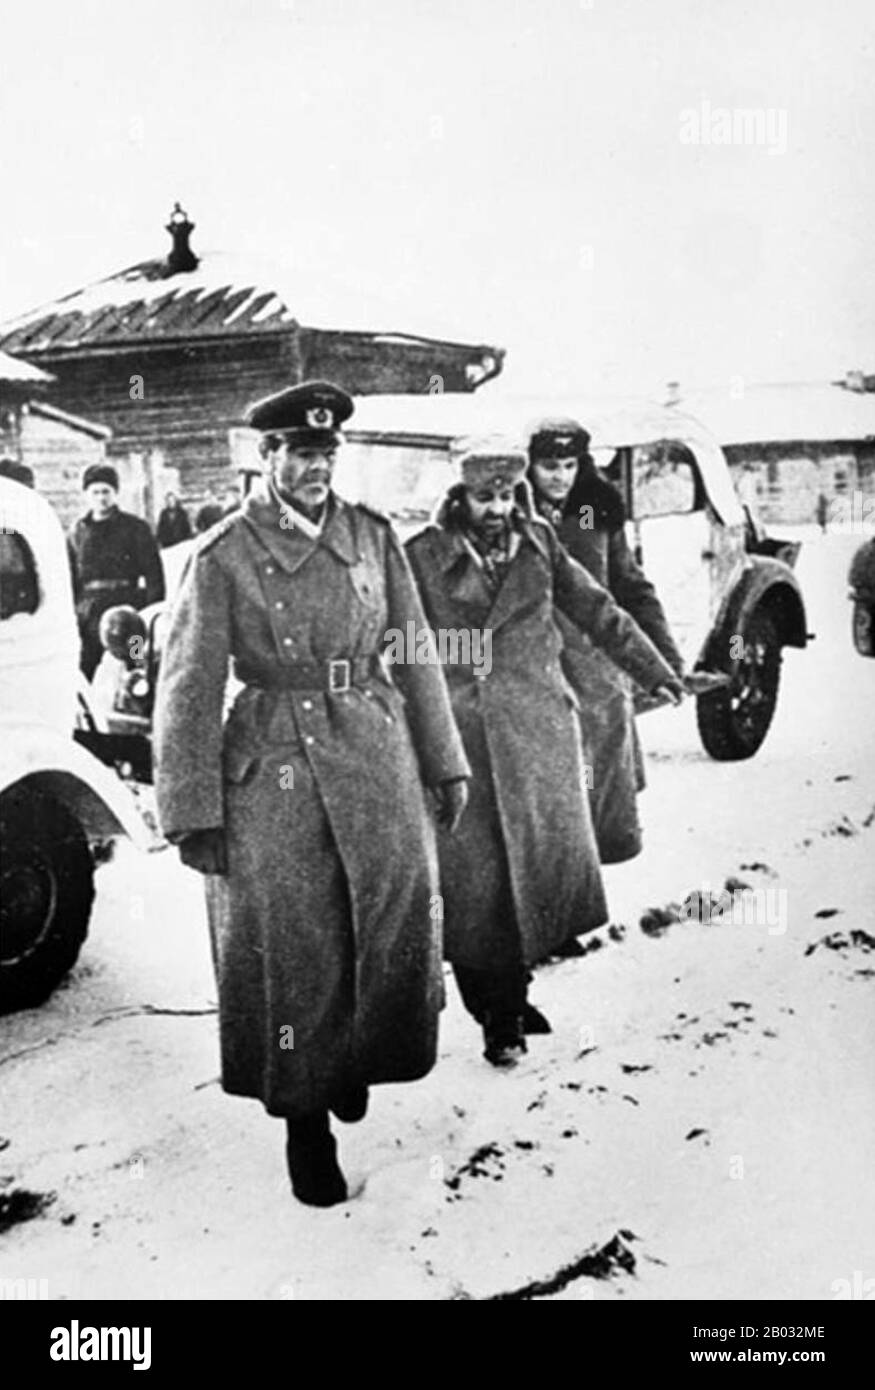 Die Schlacht von Stalingrad (23. August 1942 - 2. Februar 1943) war eine große Schlacht an der Ostfront des zweiten Weltkriegs, in der das nationalsozialistische Deutschland und seine Verbündeten die Sowjetunion um die Kontrolle über die Stadt Stalingrad (heute Wolgograd) in Südrussland kämpften. Nahe der östlichen Grenze Europas. Durch ständige Nahkämpfe und direkte Übergriffe auf Zivilisten durch Luftangriffe gekennzeichnet, gilt sie oft als eine der größten (fast 2,2 Millionen Personal) und blutigsten (1,7-2 Millionen Verwundete, Getötete oder gefangengenommene) Schlachten in der Geschichte der Kriegsführung. Die schweren Verluste, die dem deutschen Wehrmach zugefügt wurden Stockfoto